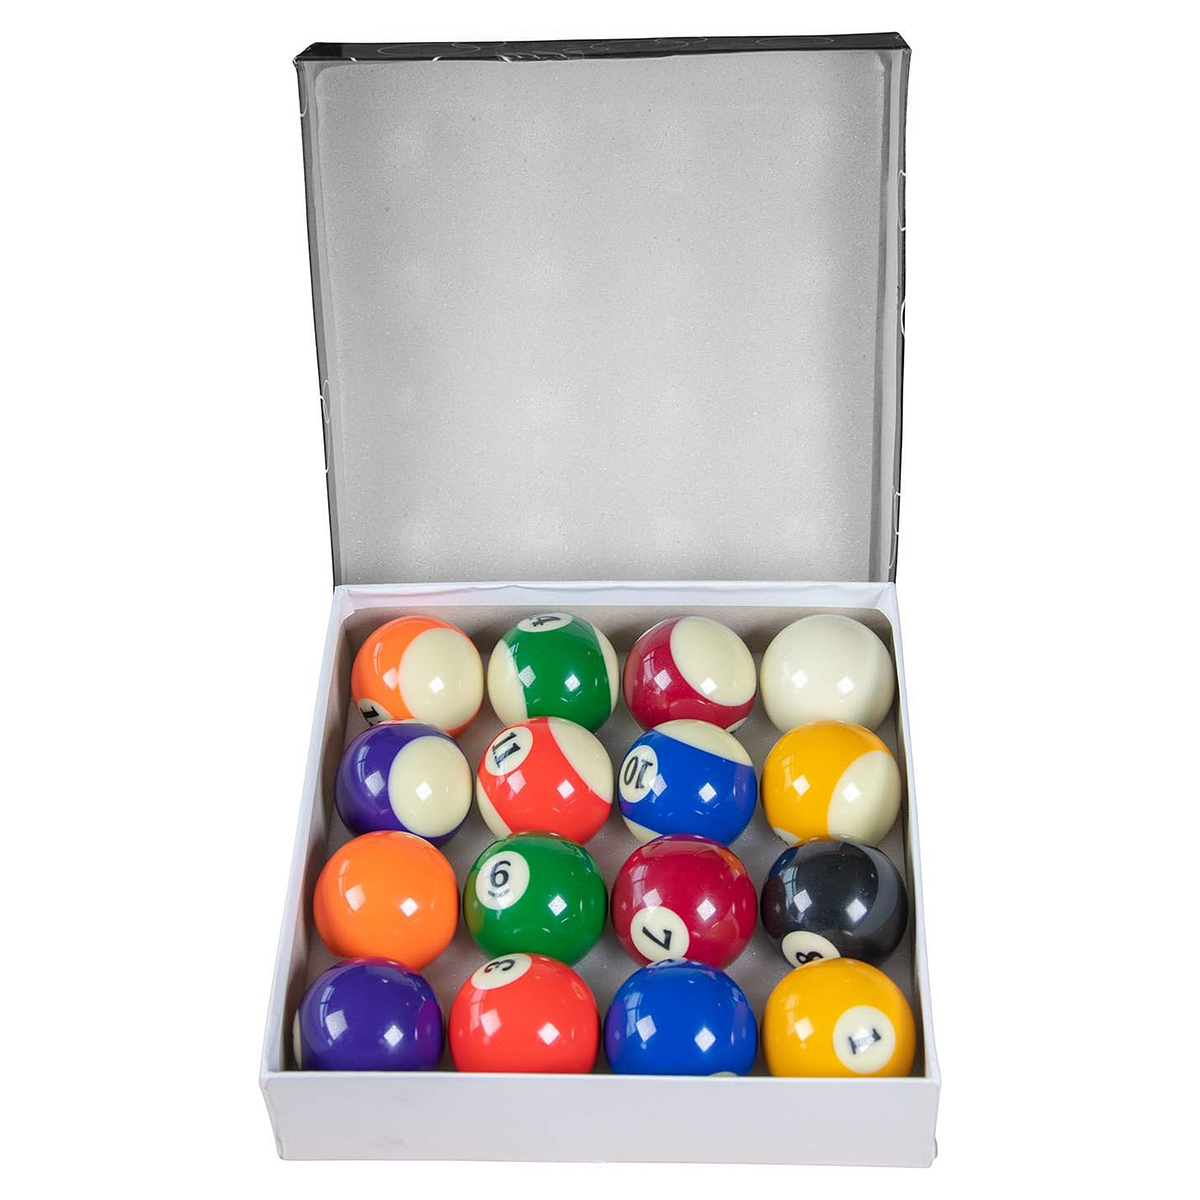 Juego de bolas de billar de 2-1/4 pulgadas, juego de bolas de billar,  tamaño estándar, juego completo de 16 bolas